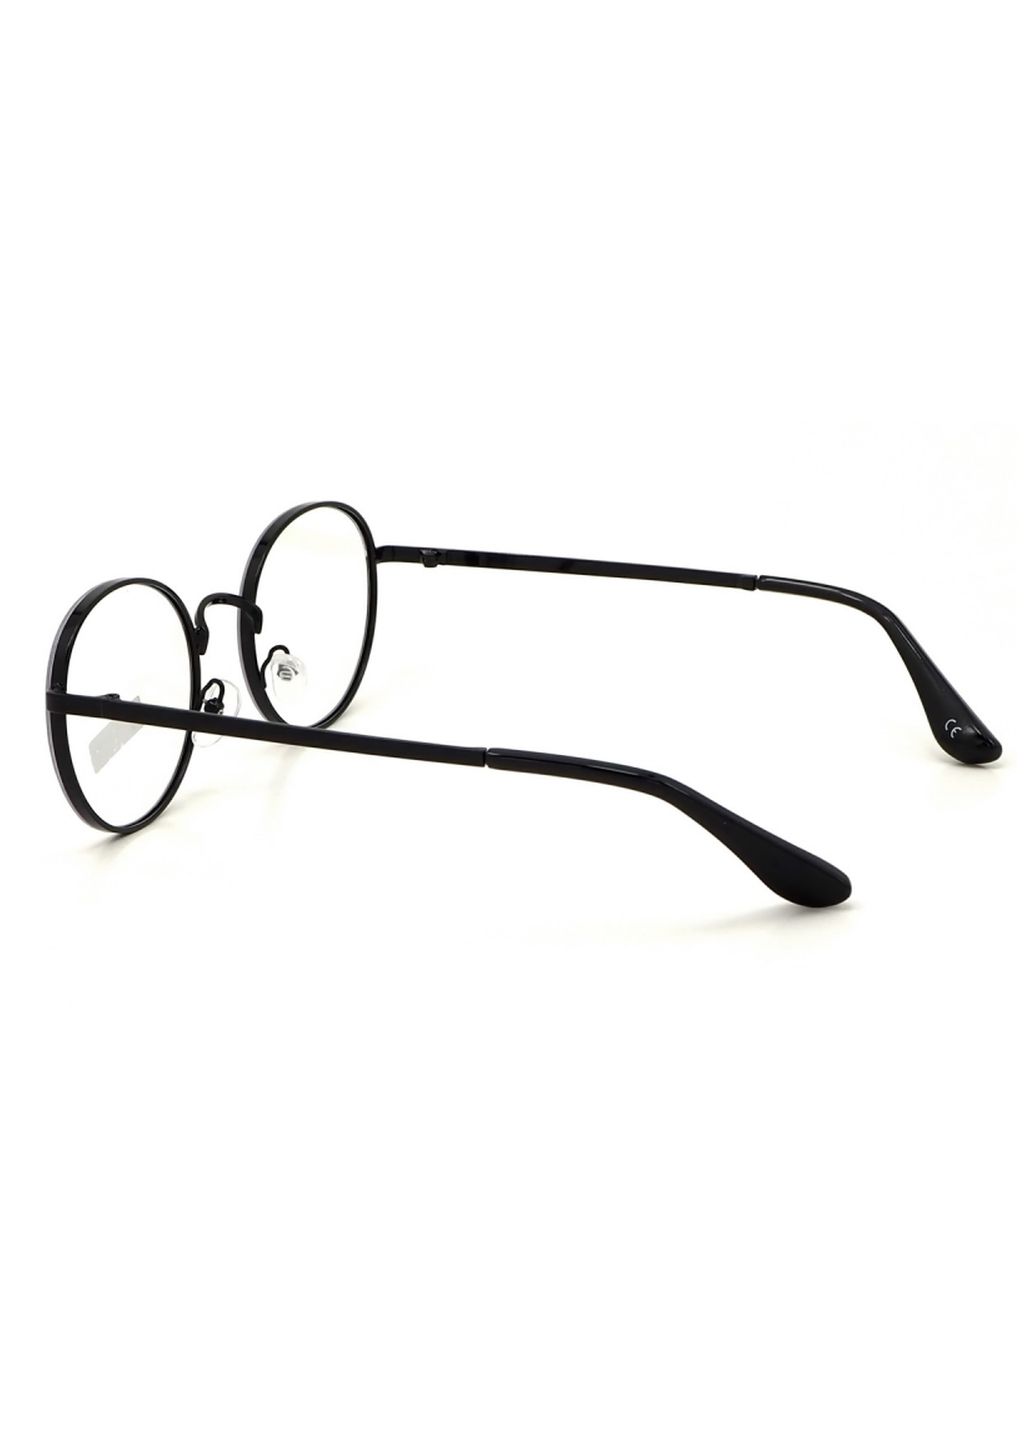 Купить Очки для работы за компьютером Cooper Glasses в черной оправе 124013 в интернет-магазине